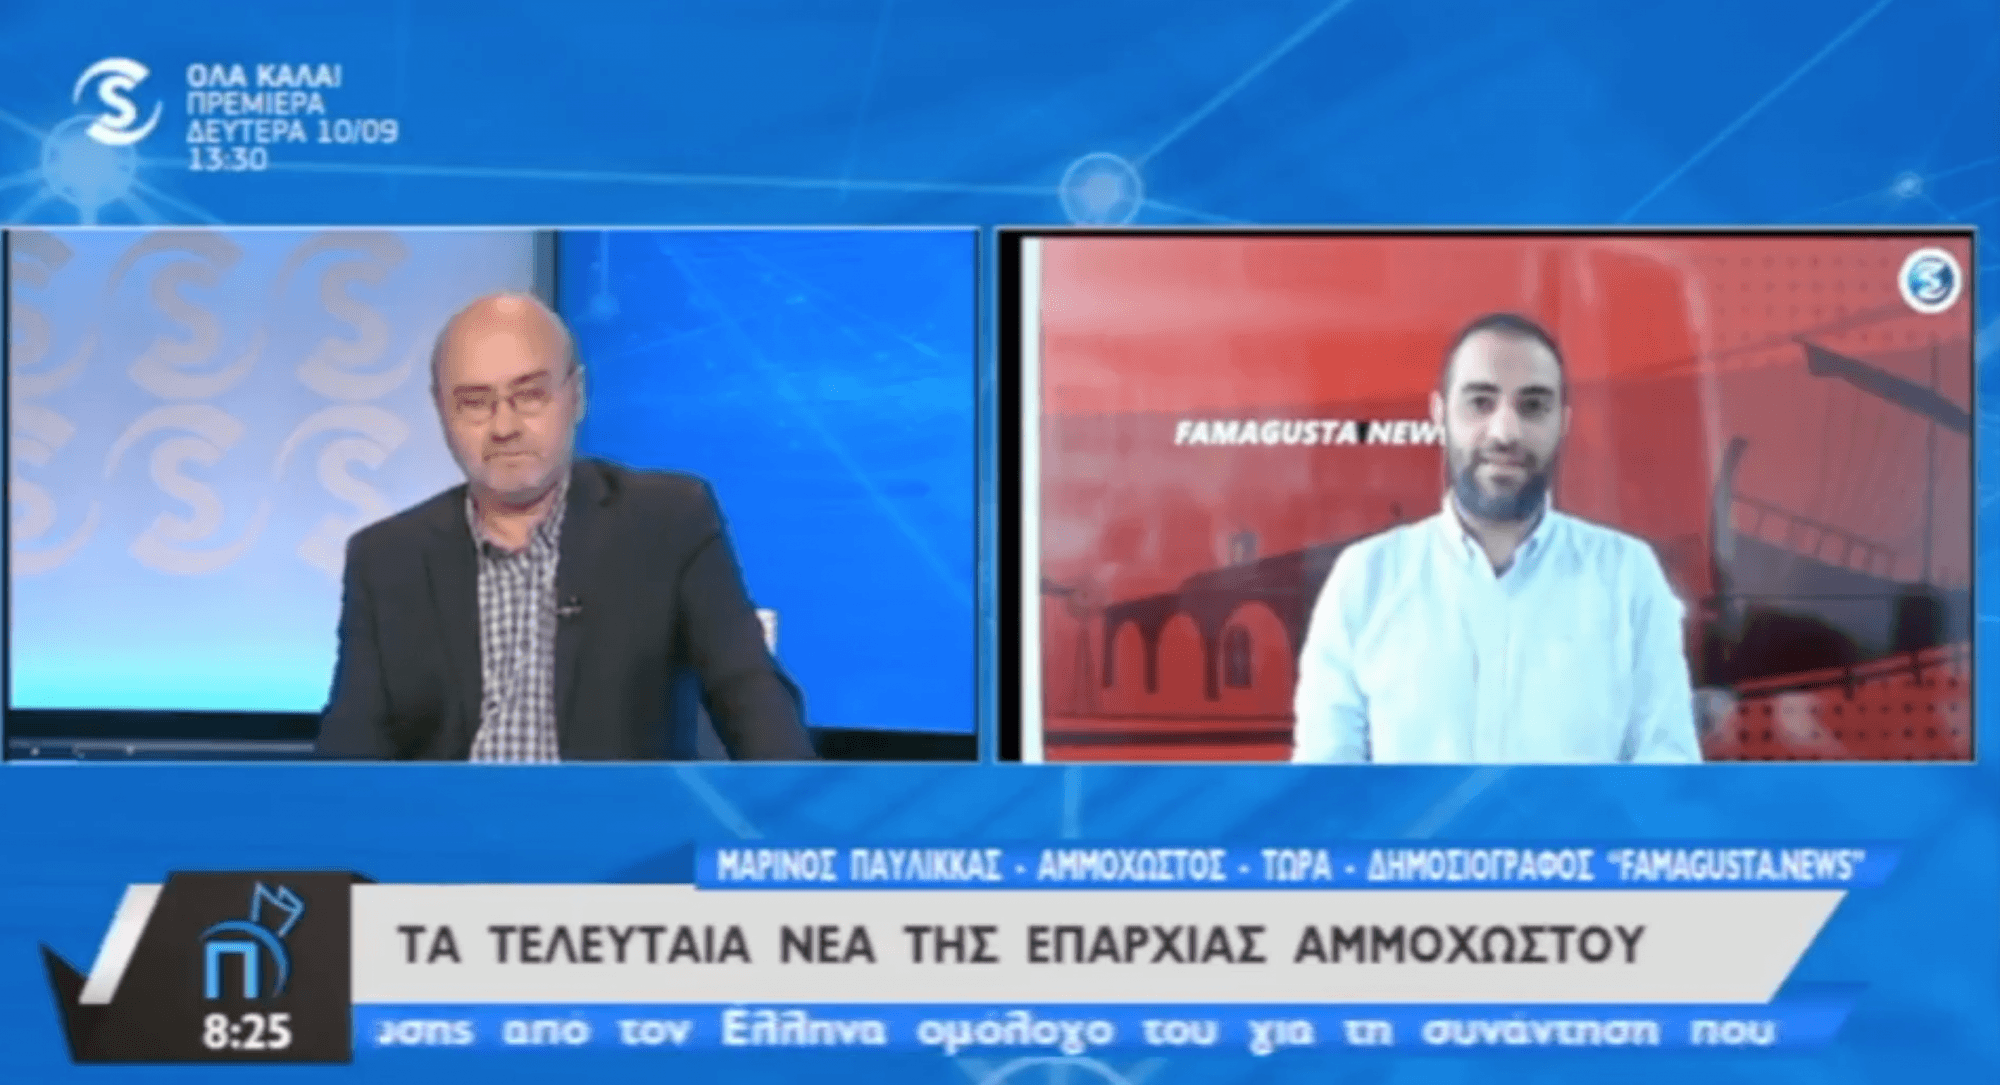 Στιγμιότυπο 2018 09 10 15.14.45 Famagusta.News, FamagustaNews, SIGMA TV, Νέα Αμμοχώστου, Πρωτοσέλιδο